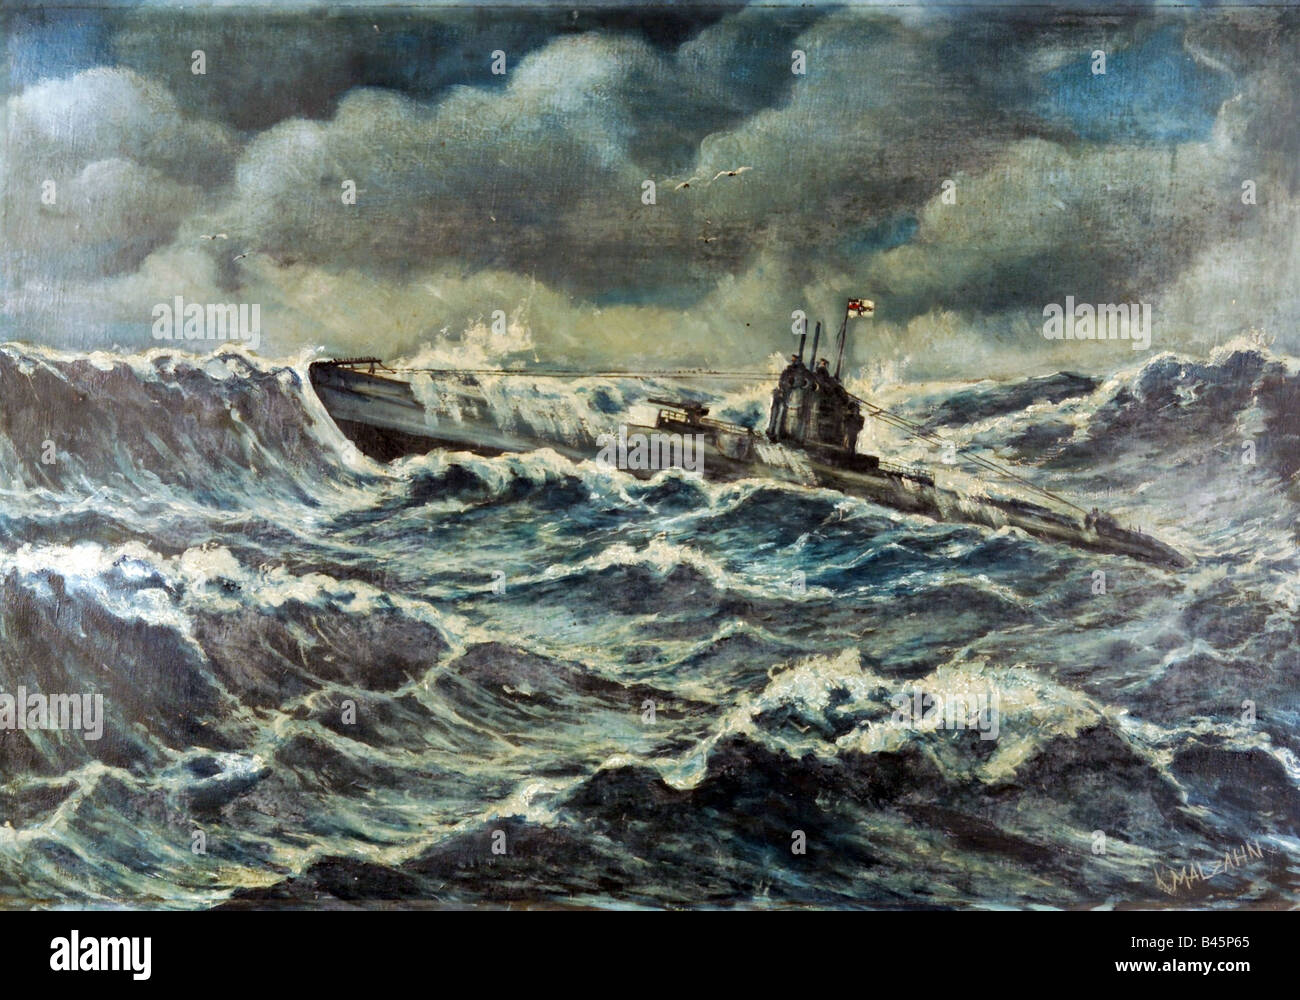 Trasporti/trasporti, navigazione, sottomarini, sottomarino in mare pesante, pittura di K. Mahlzahn, inizio 20th secolo, marina imperiale, Germania, guerra navale, , Foto Stock